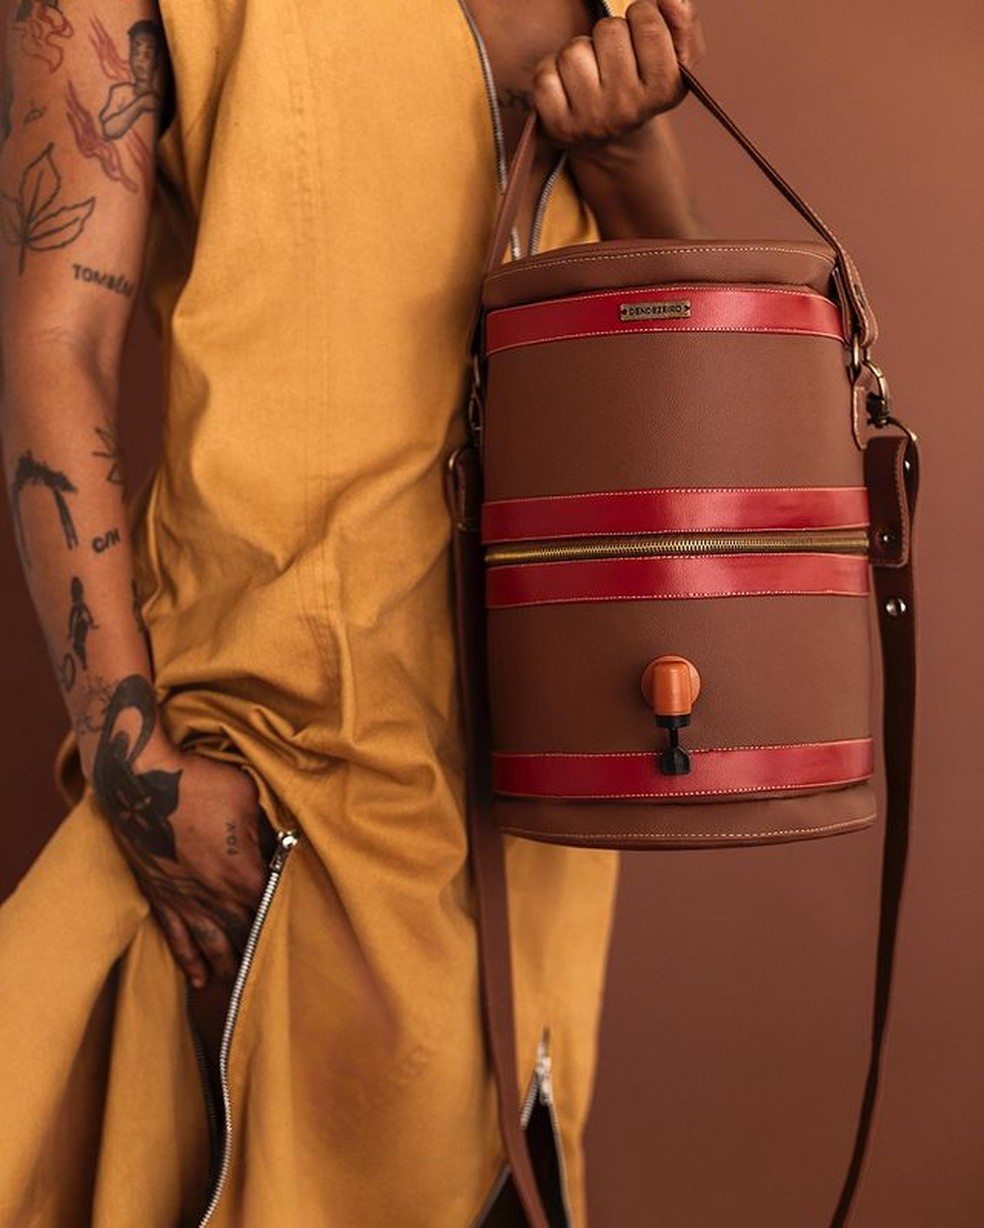 A bolsa marrom traz as faixas vermelhas características do filtro de barro — Foto: Instagram / @dendezeiro / Reprodução